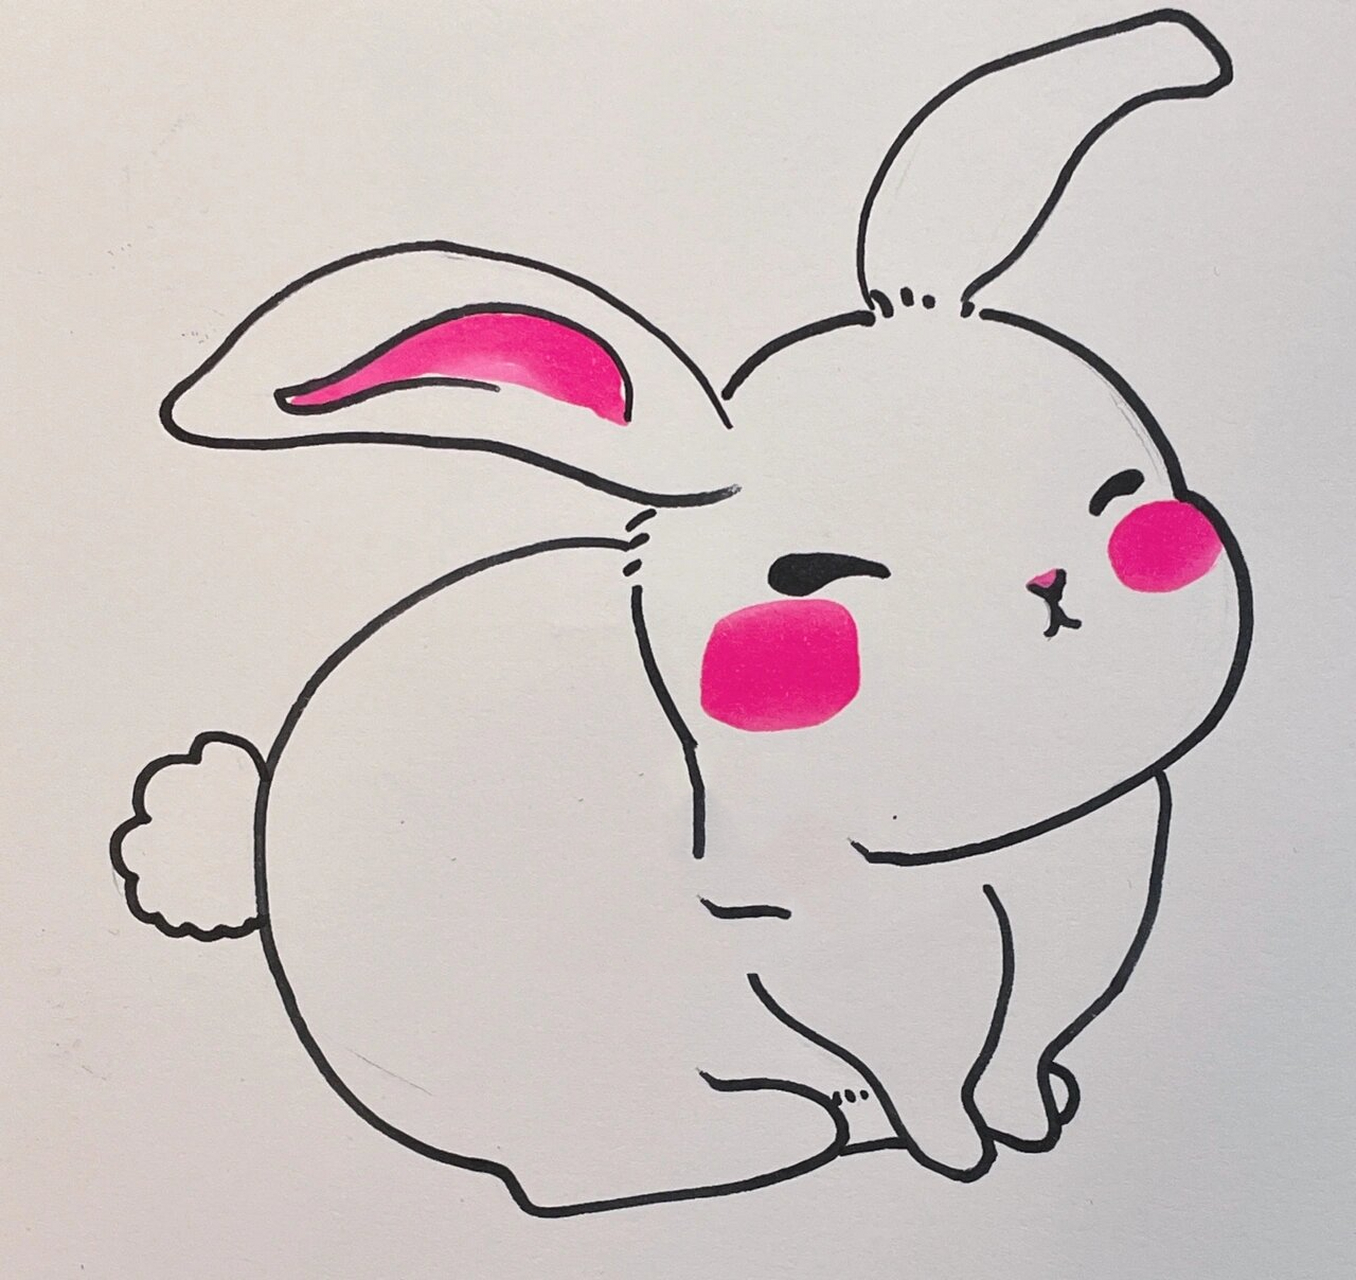 中秋节～兔子92简笔画 中秋节快来啦 画一波可爱的兔子92助助兴